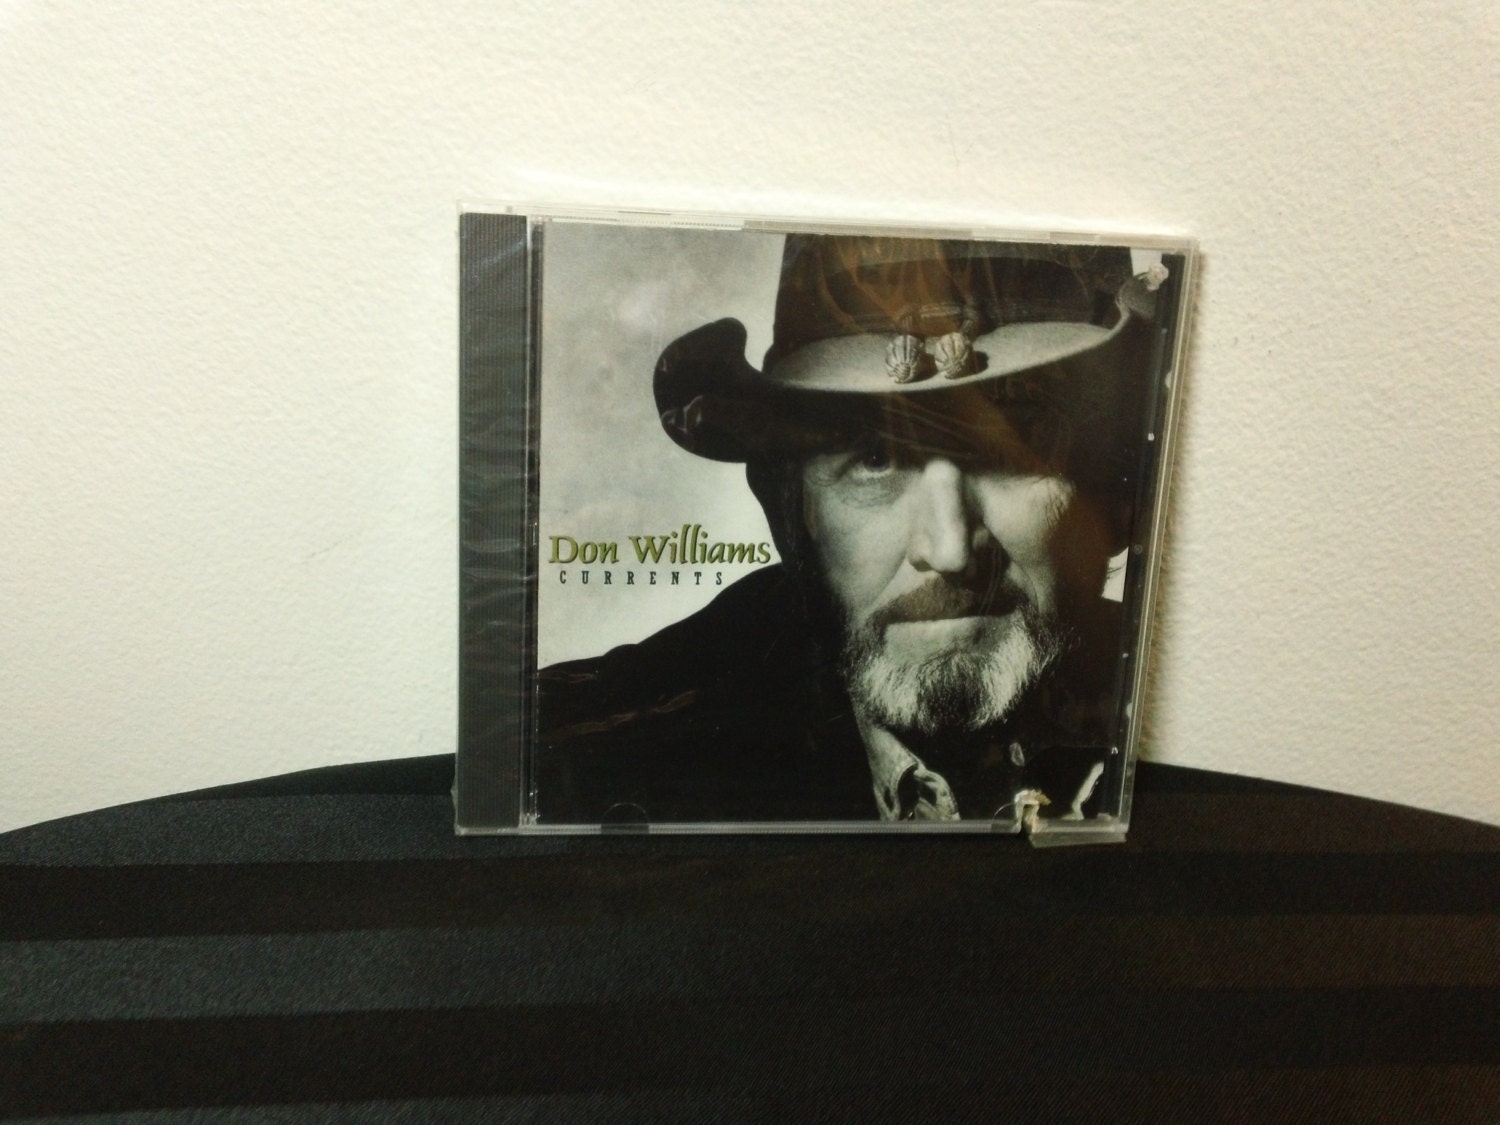 Don Williams Currents 61128 2 CD album RCA